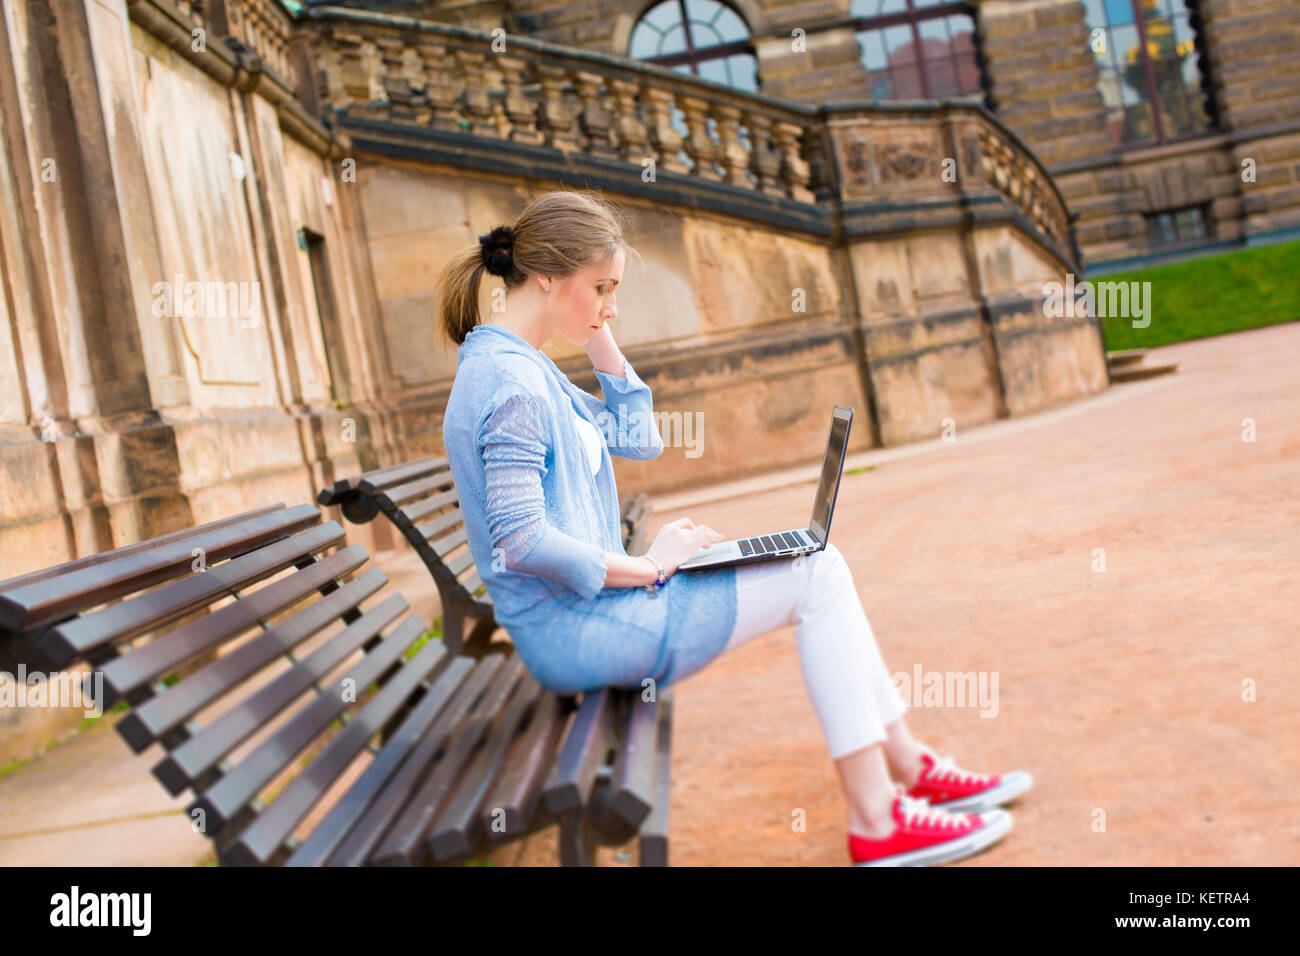 Junge Schülerin mit einem Laptop in einem Park auf einer Bank Stockfoto